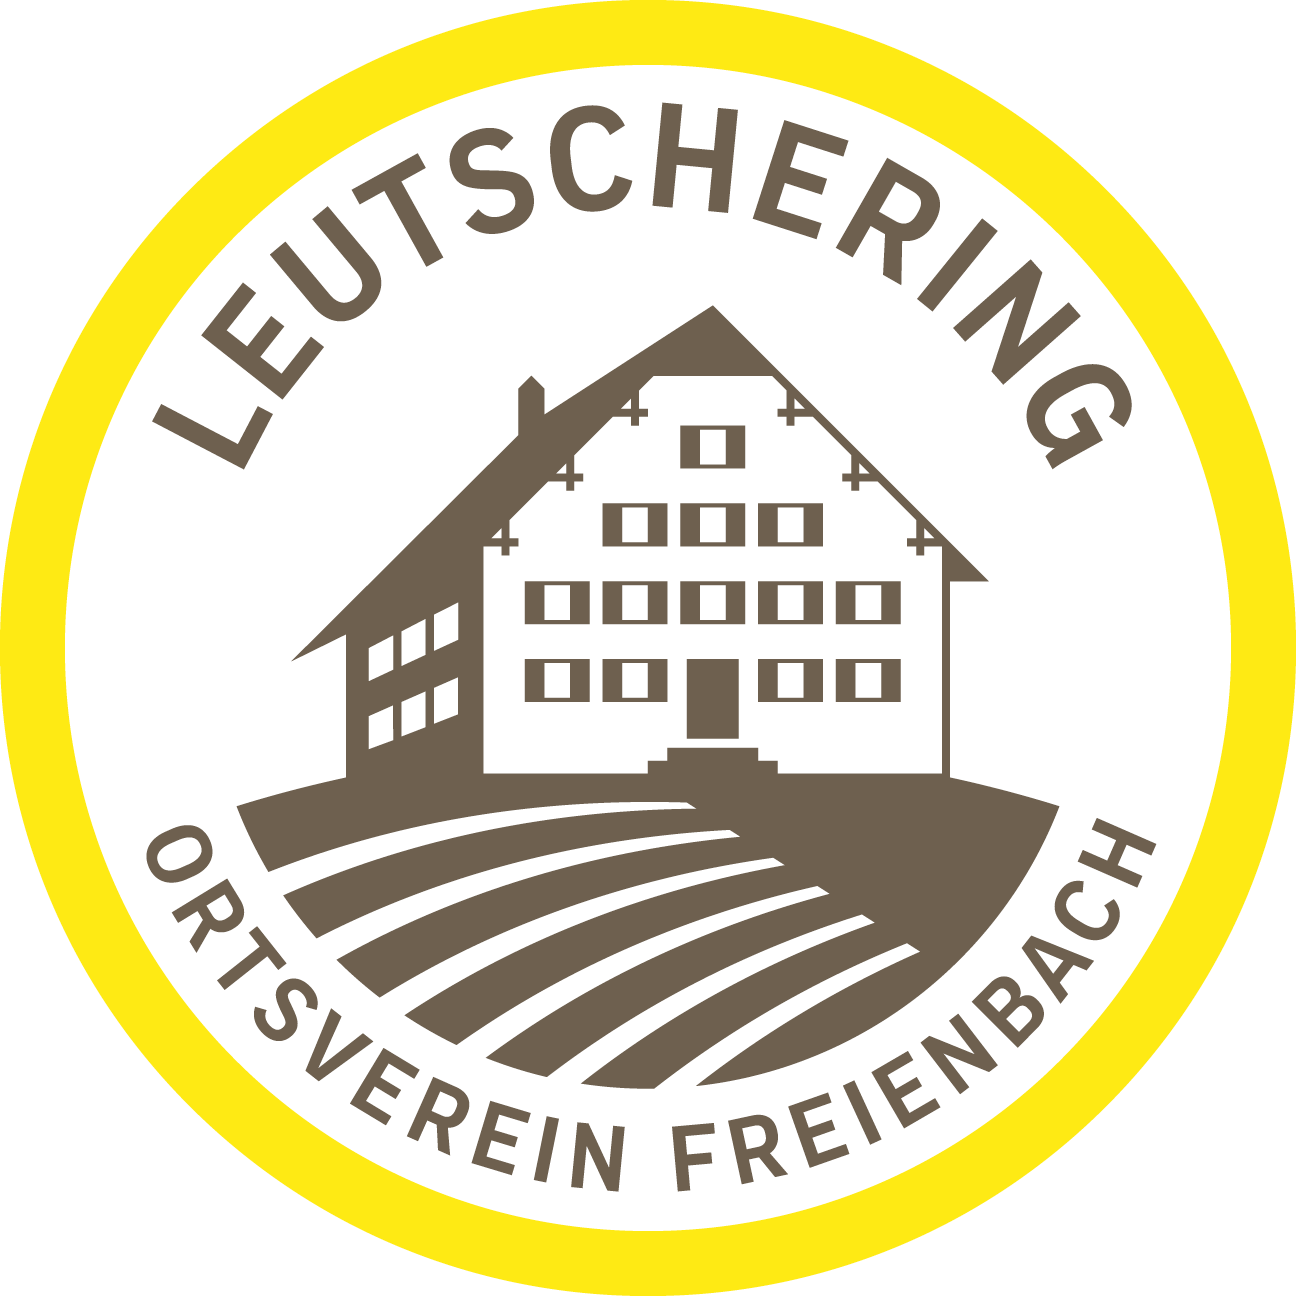 Ortsverein Leutschering; Freienbach